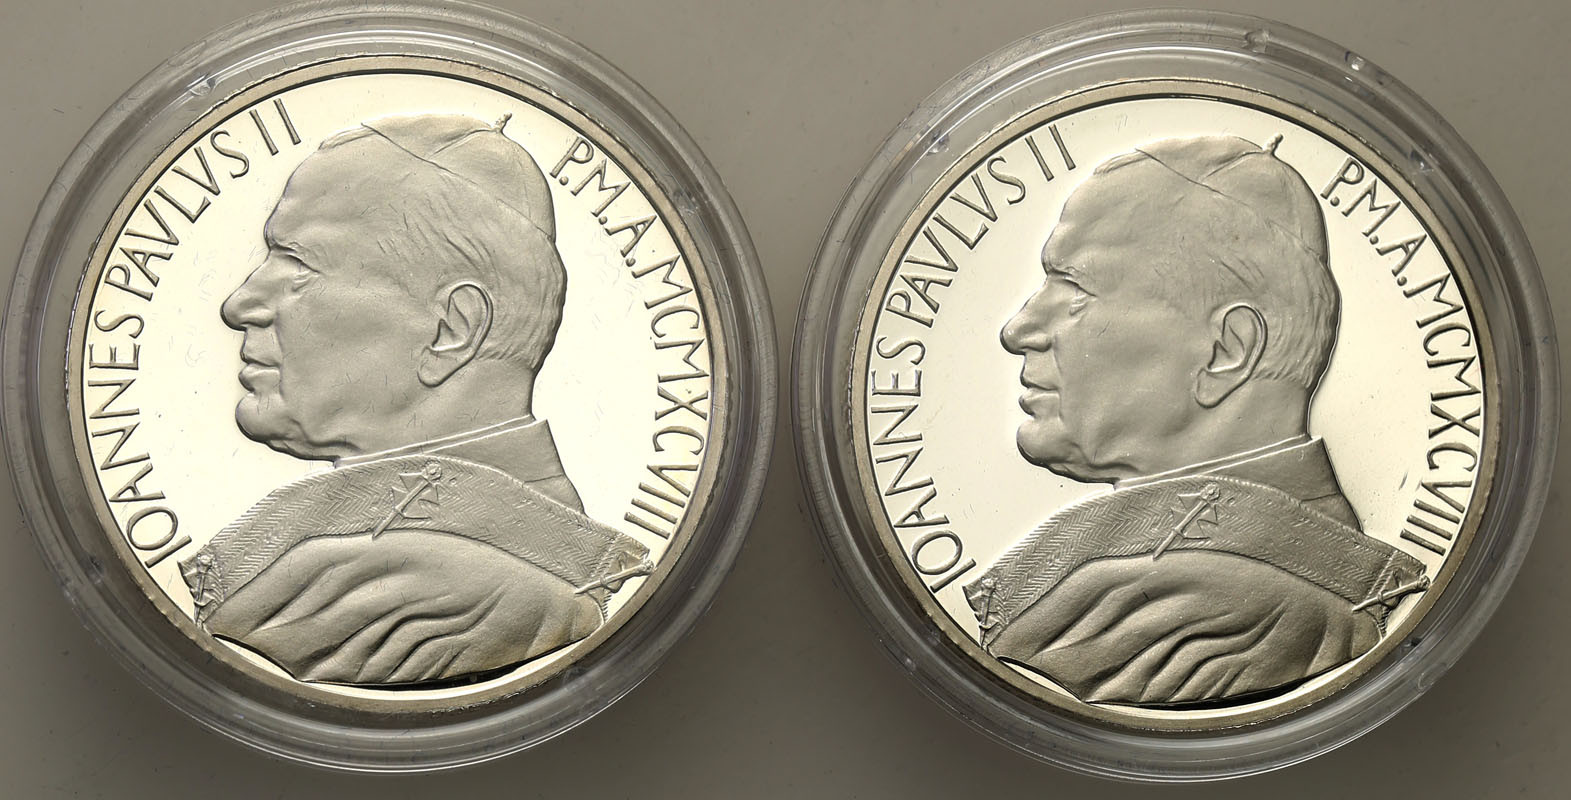 Watykan. 10.000 Lire 1998 - Jan Paweł II, zestaw 2 monet